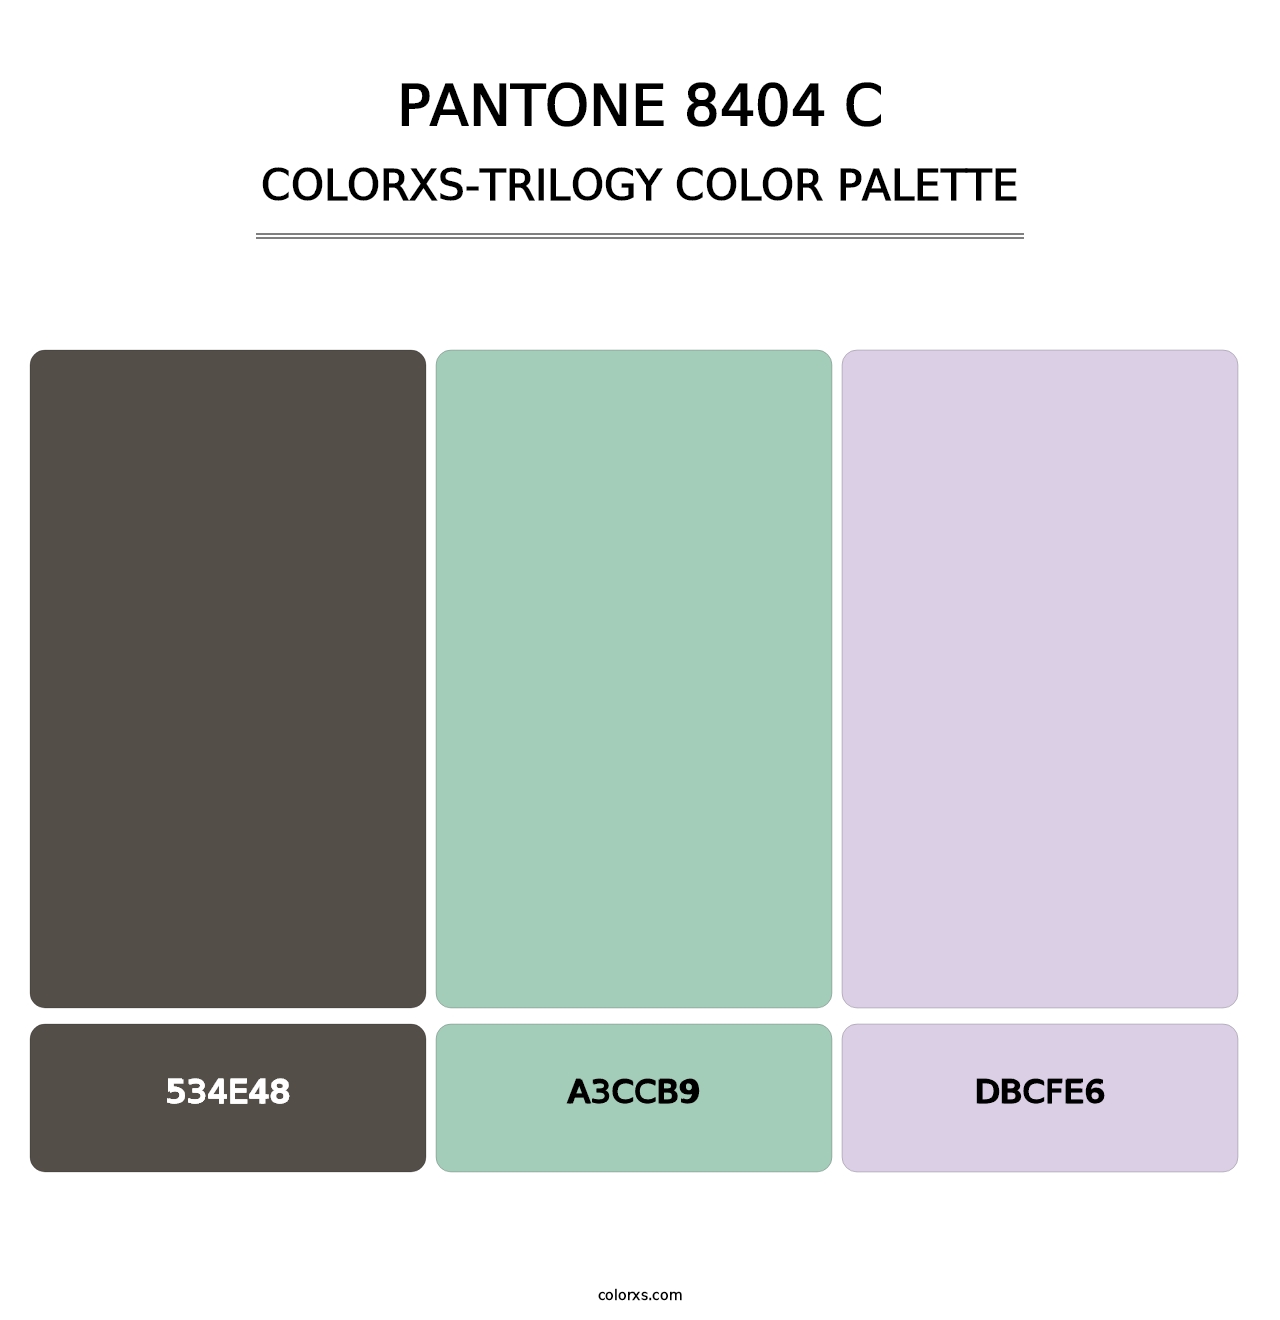 PANTONE 8404 C - Colorxs Trilogy Palette